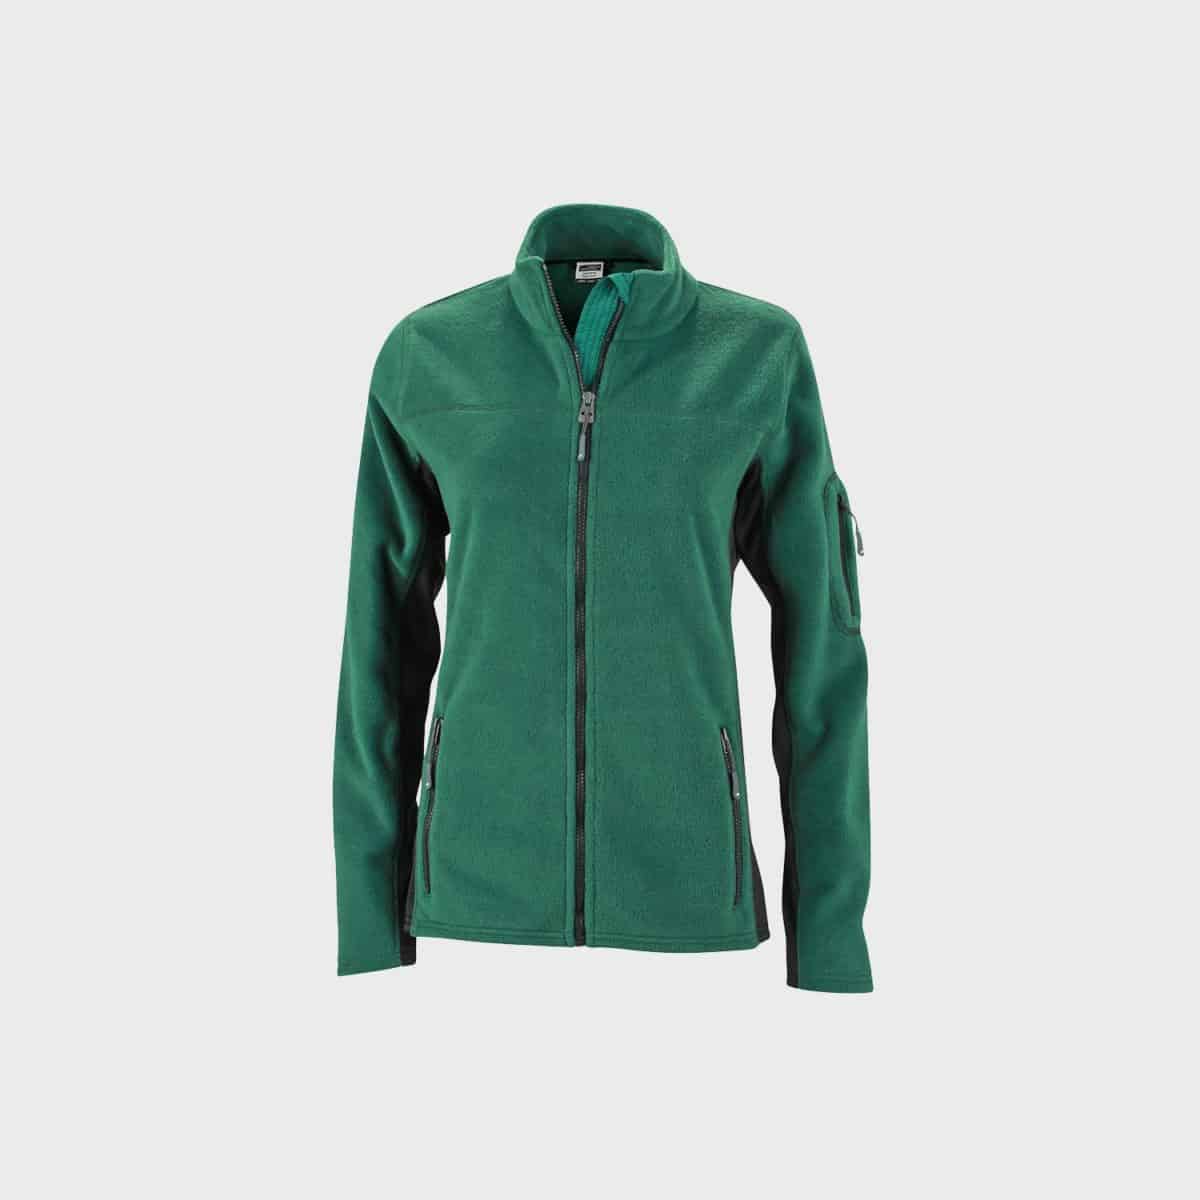 fleece-jacket-workwear-damen-darkgreen-kaufen-besticken_stickmanufaktur